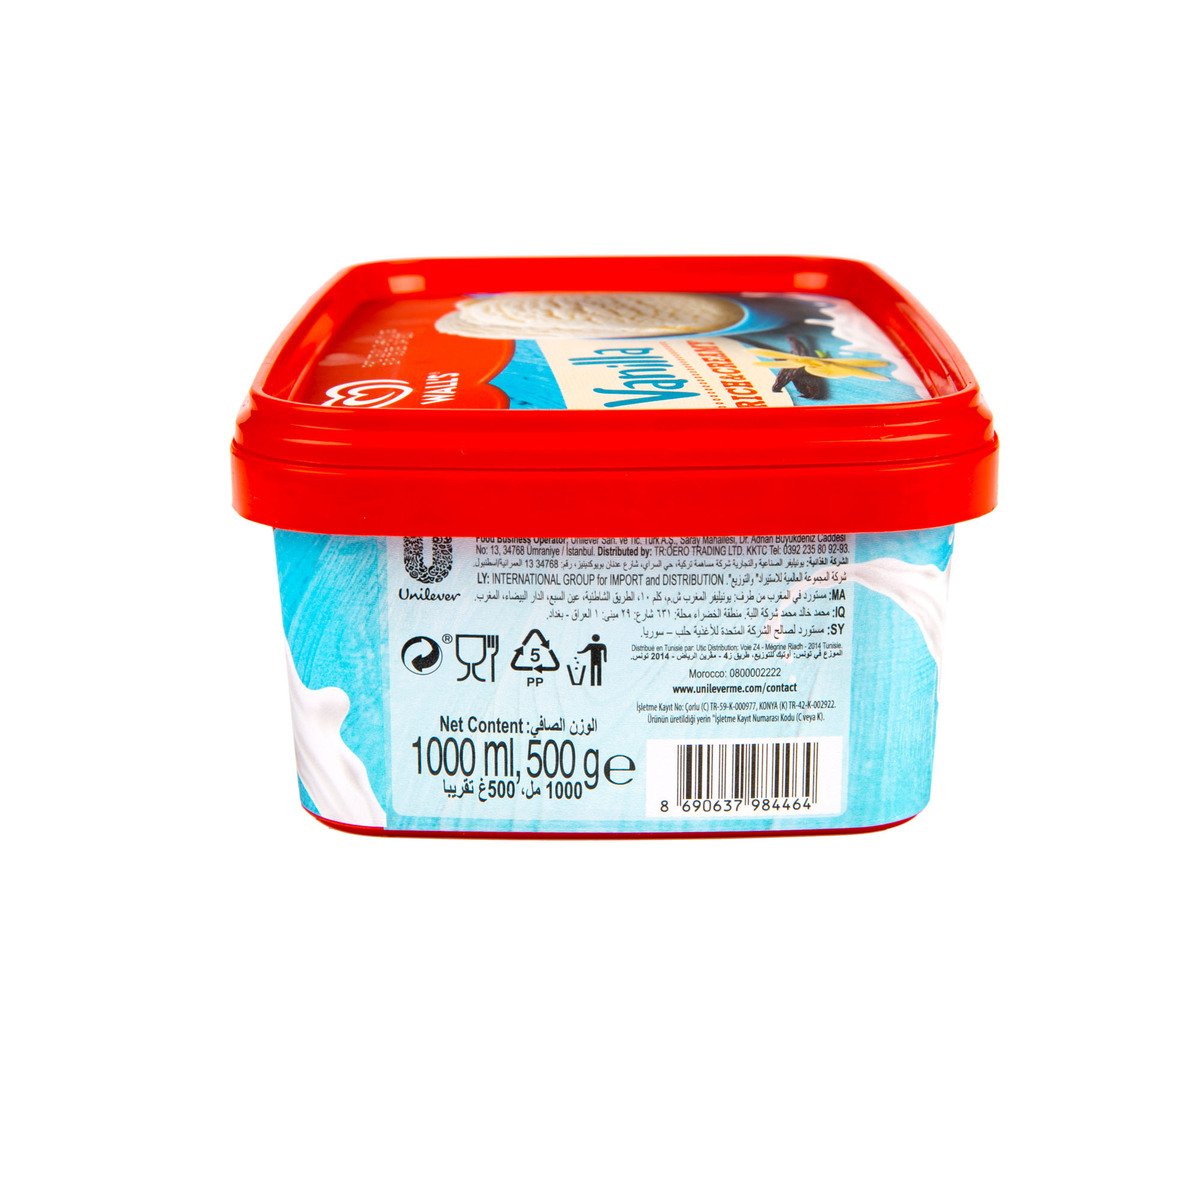 Wall's Rich & Creamy Vanilla Ice Cream 1Litre